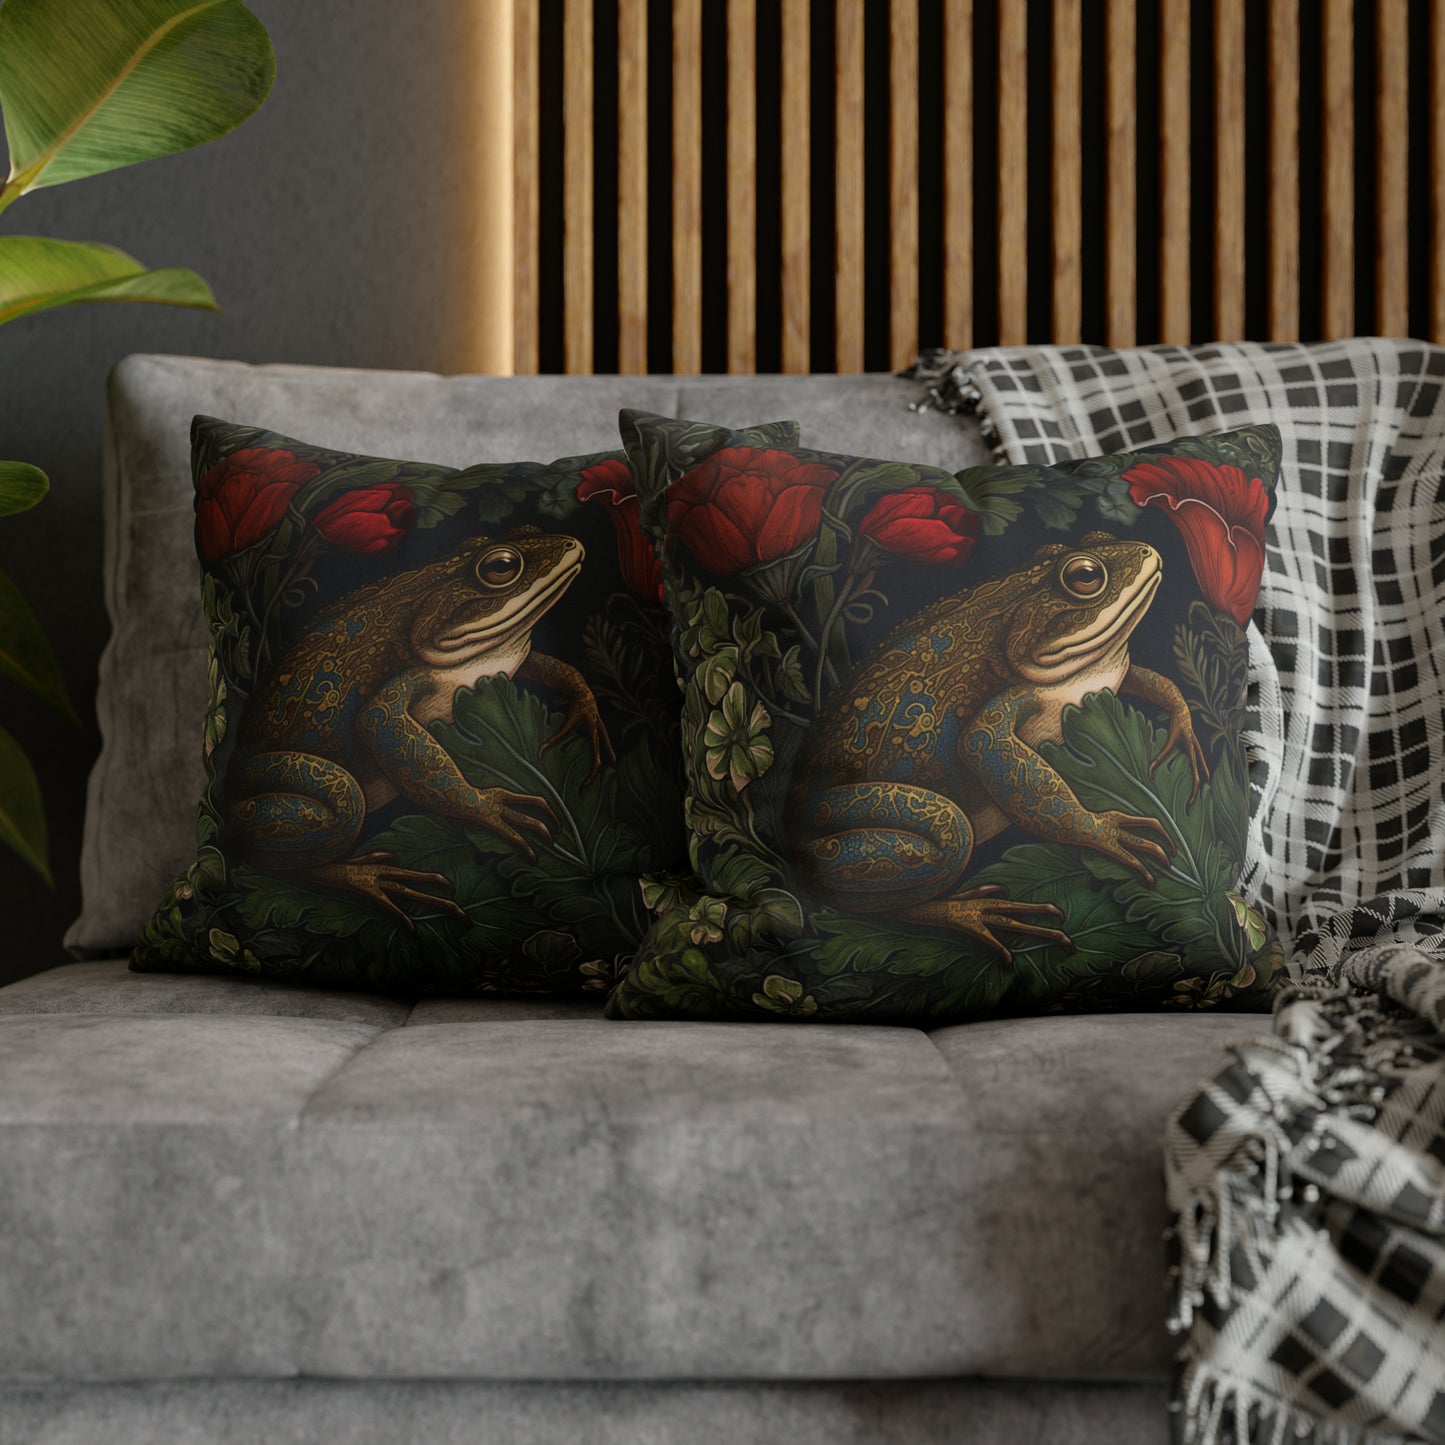 Frog in Garden Pillow William Morris Inspired